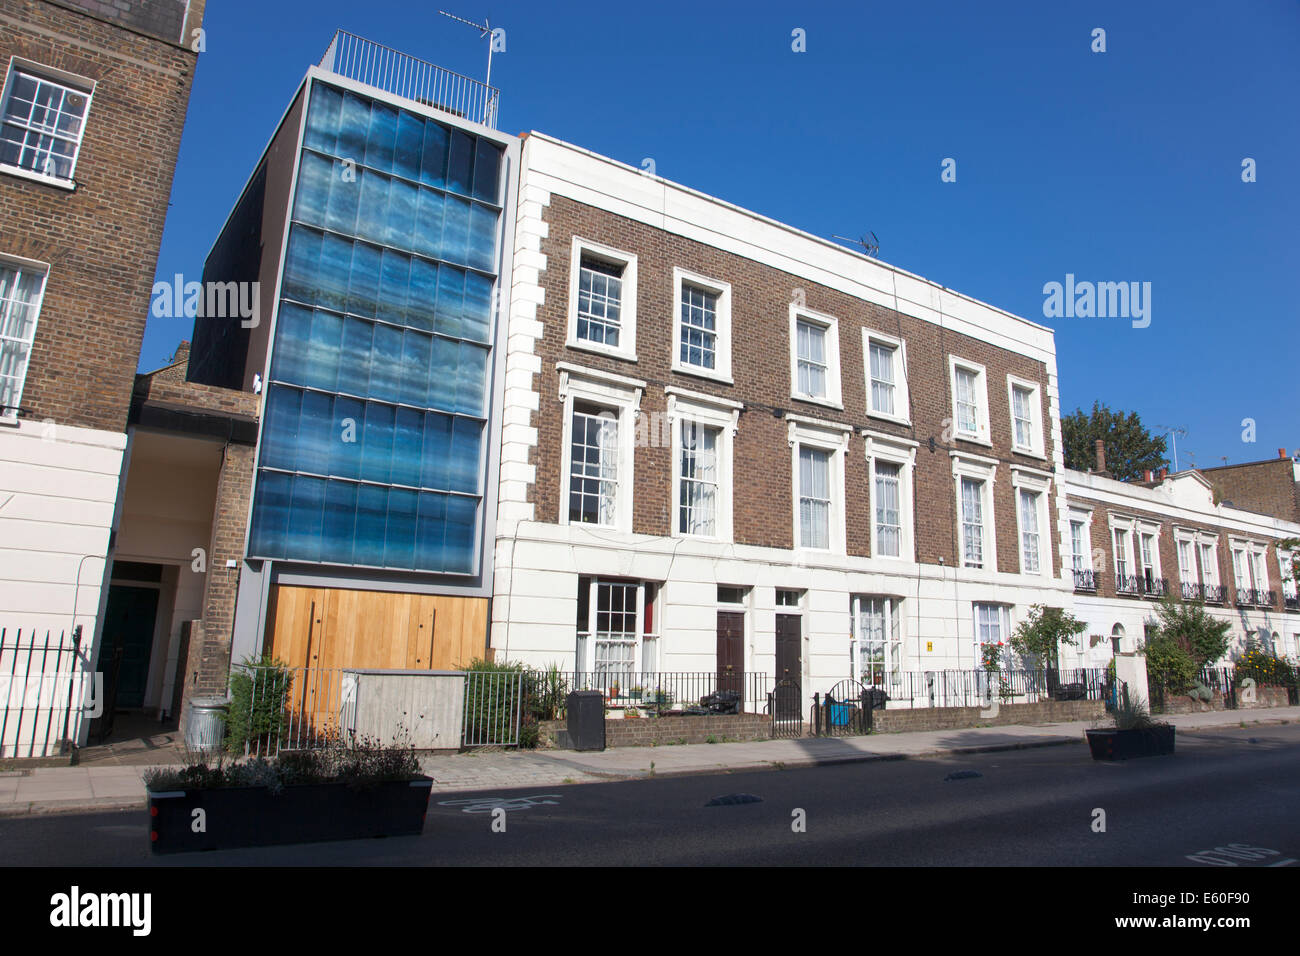 Immeuble contemporain parmi les maisons victoriennes dans une période exposée, au nord de Londres Banque D'Images